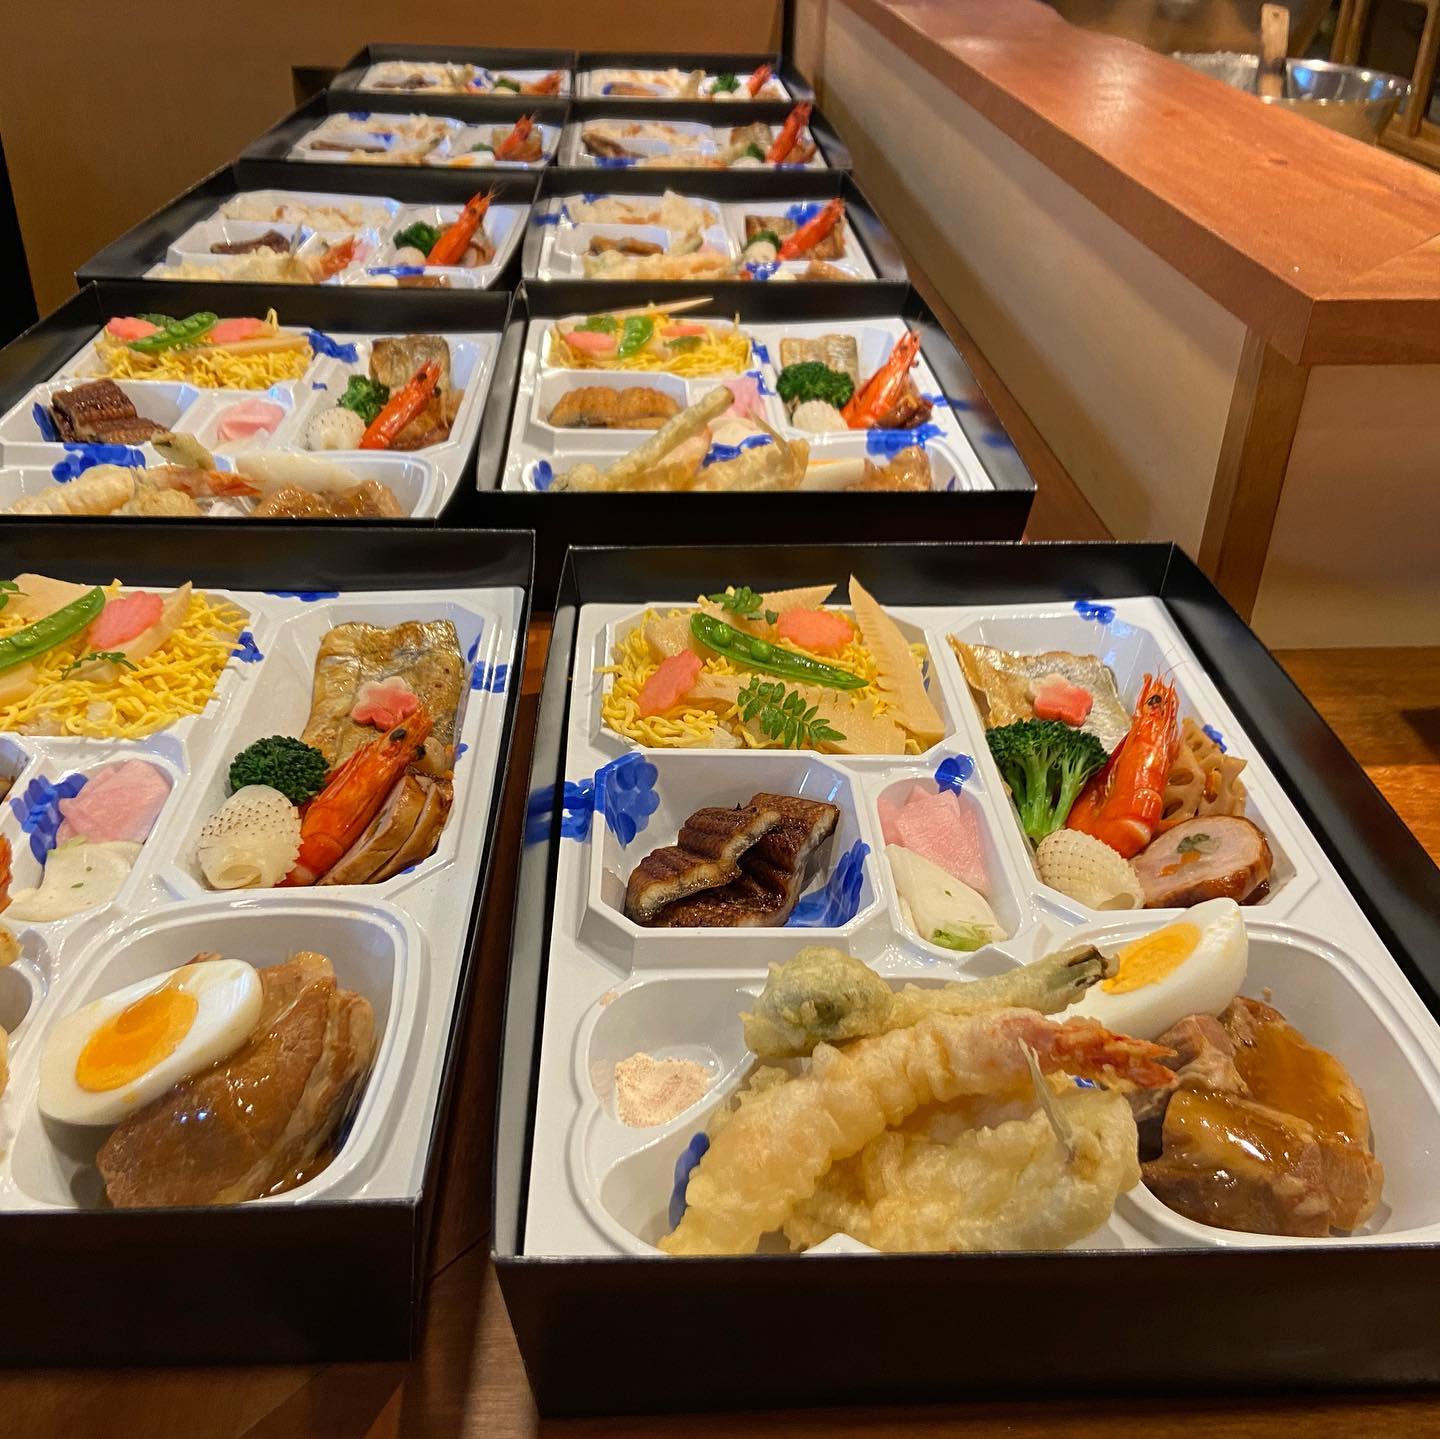 本日は、2種類のお弁当をご注文いただきました。ありがとうございます。

明日は、スタッフのモチベーションを上げる為、お休みさせていただきます。

#埼玉県熊谷市新堀737-3